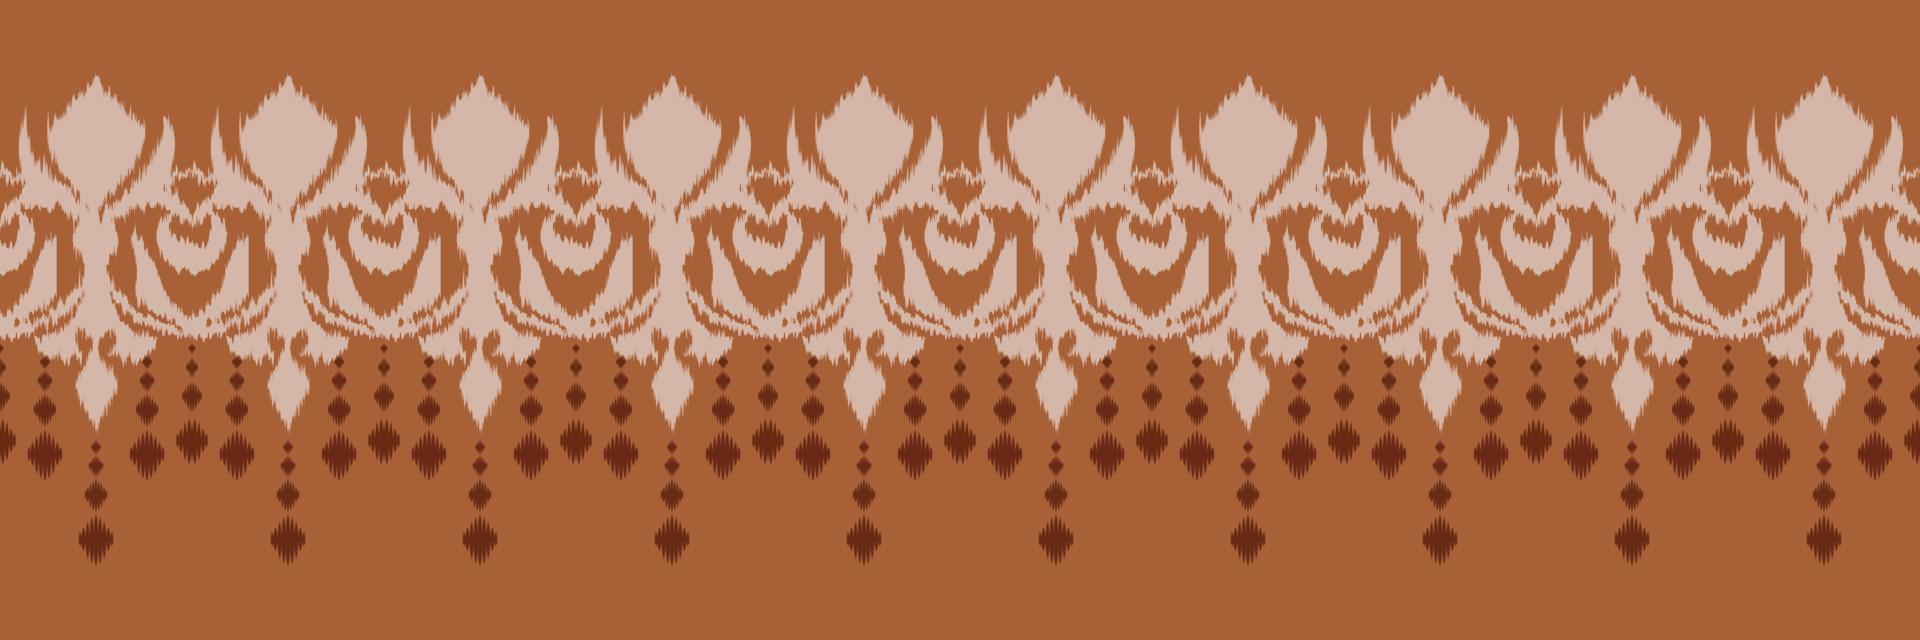 ikat grens tribal kleur naadloos patroon. etnisch meetkundig ikkat batik digitaal vector textiel ontwerp voor prints kleding stof Saree mughal borstel symbool zwaden structuur kurti kurtis kurta's